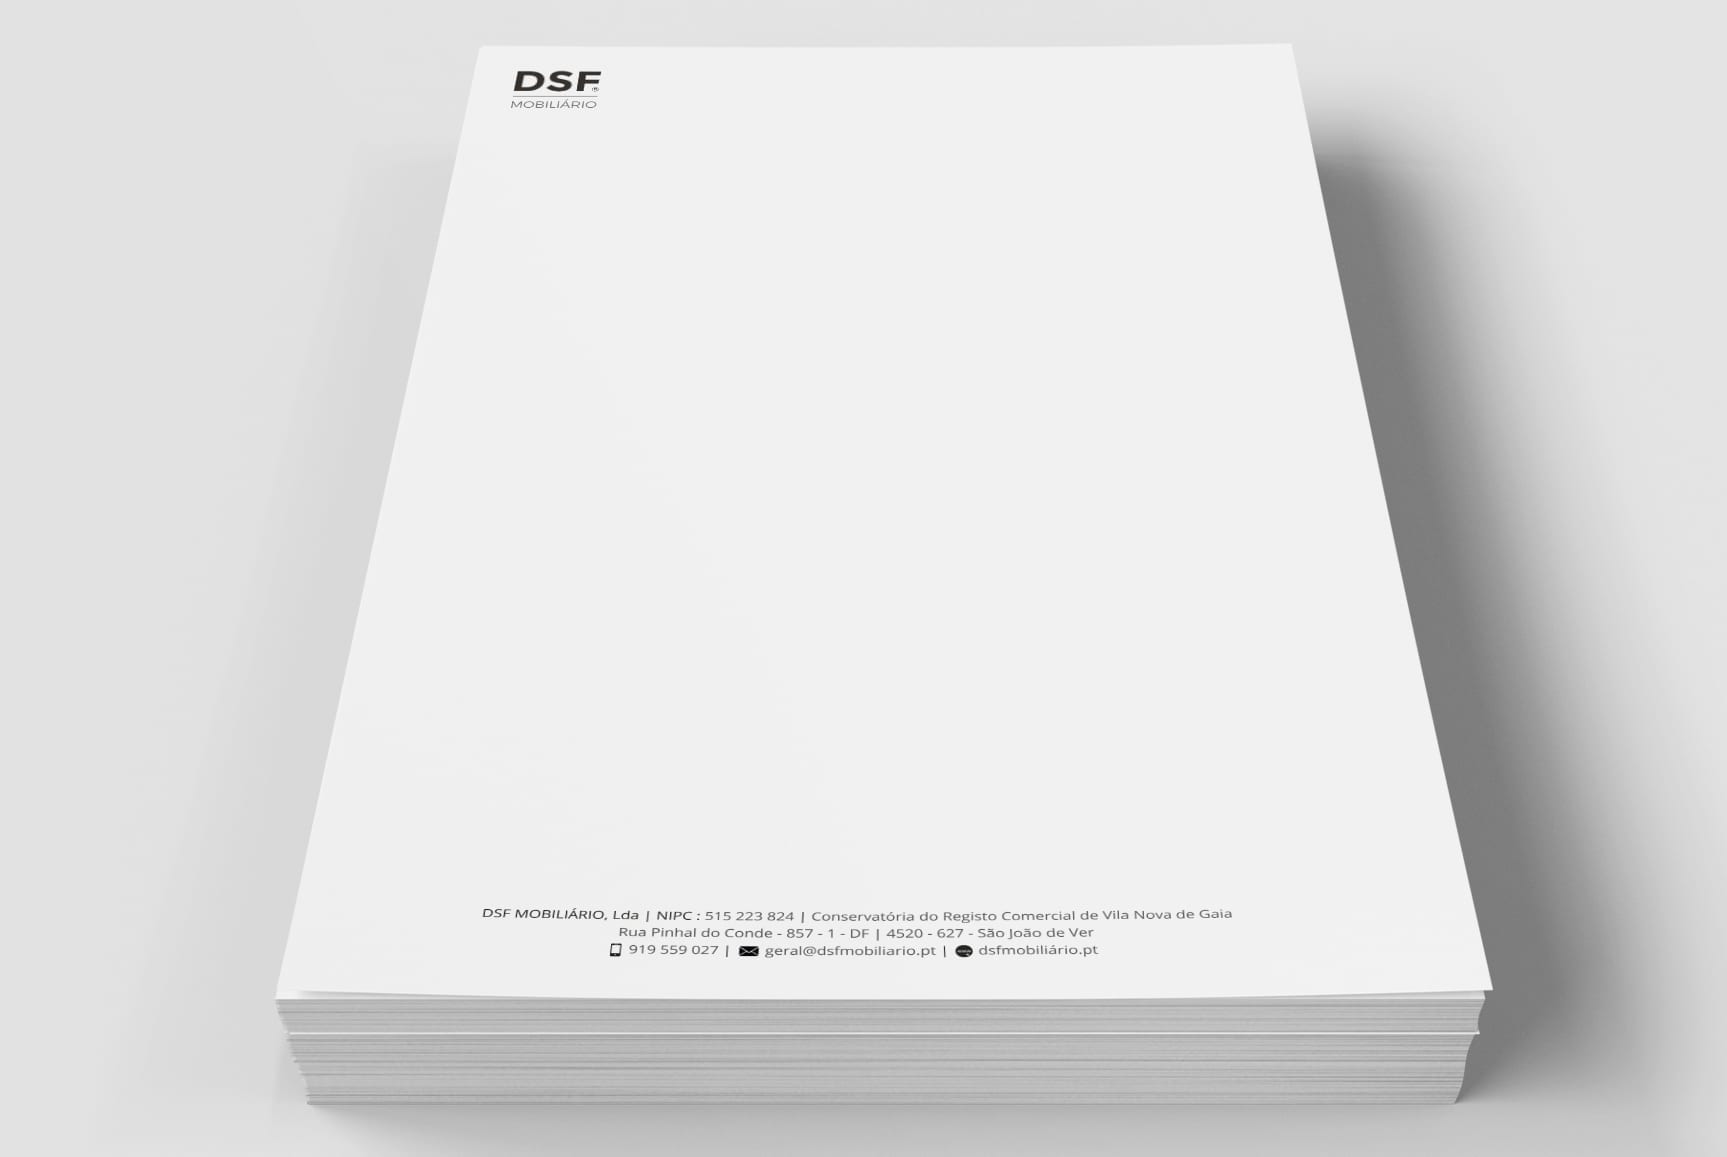 Estacionário - papel de carta com logotipo da DSF Mobiliário